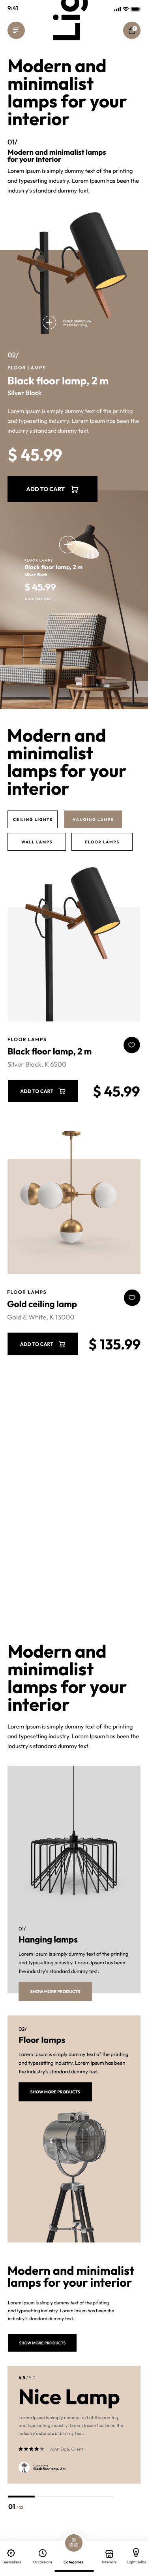 Lamps Shopify Theme - WorkDo